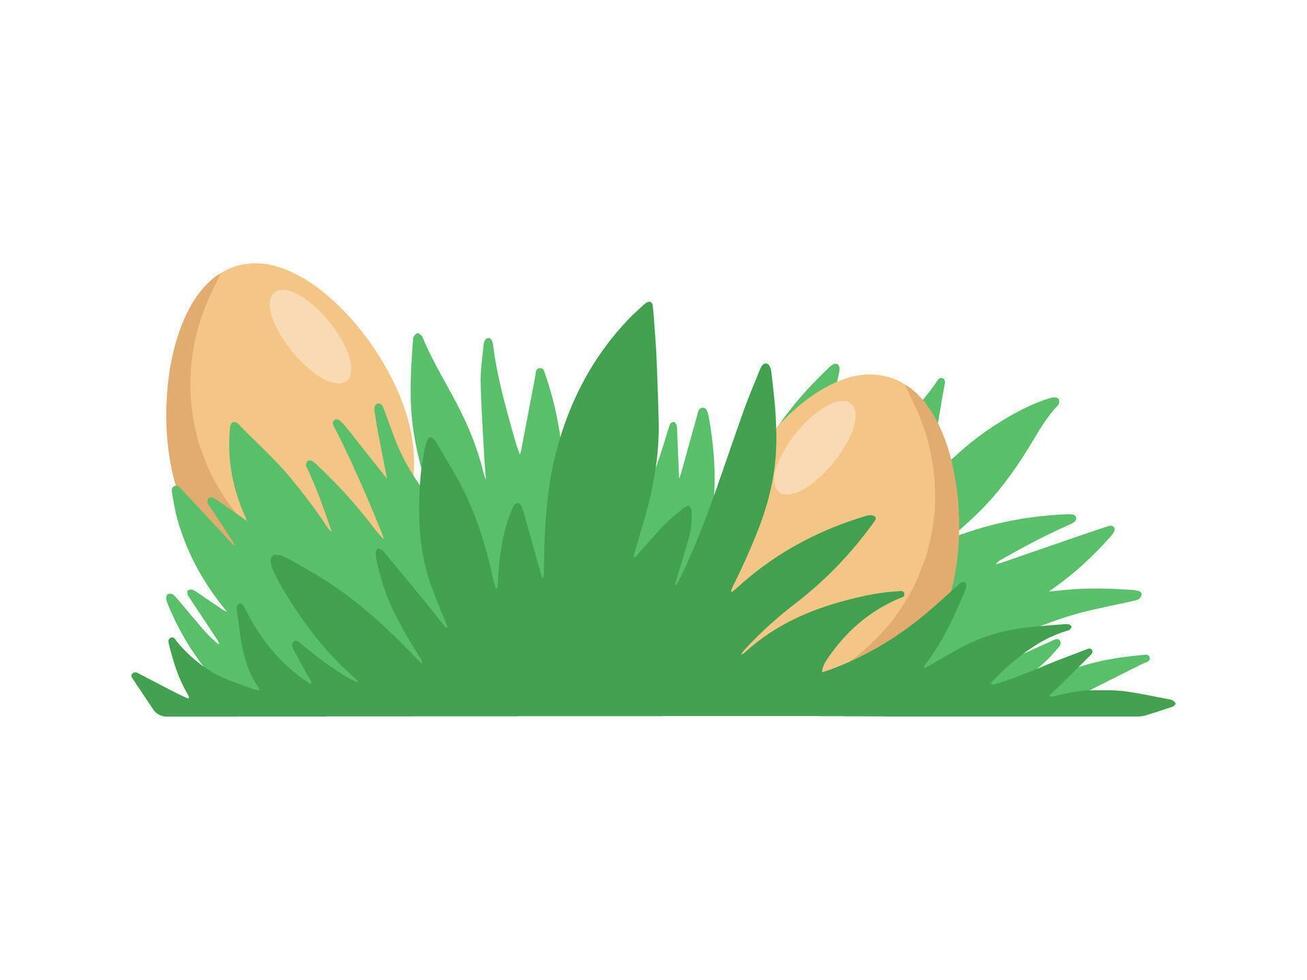 Pasqua uova sfondo dire bugie nel erba vettore